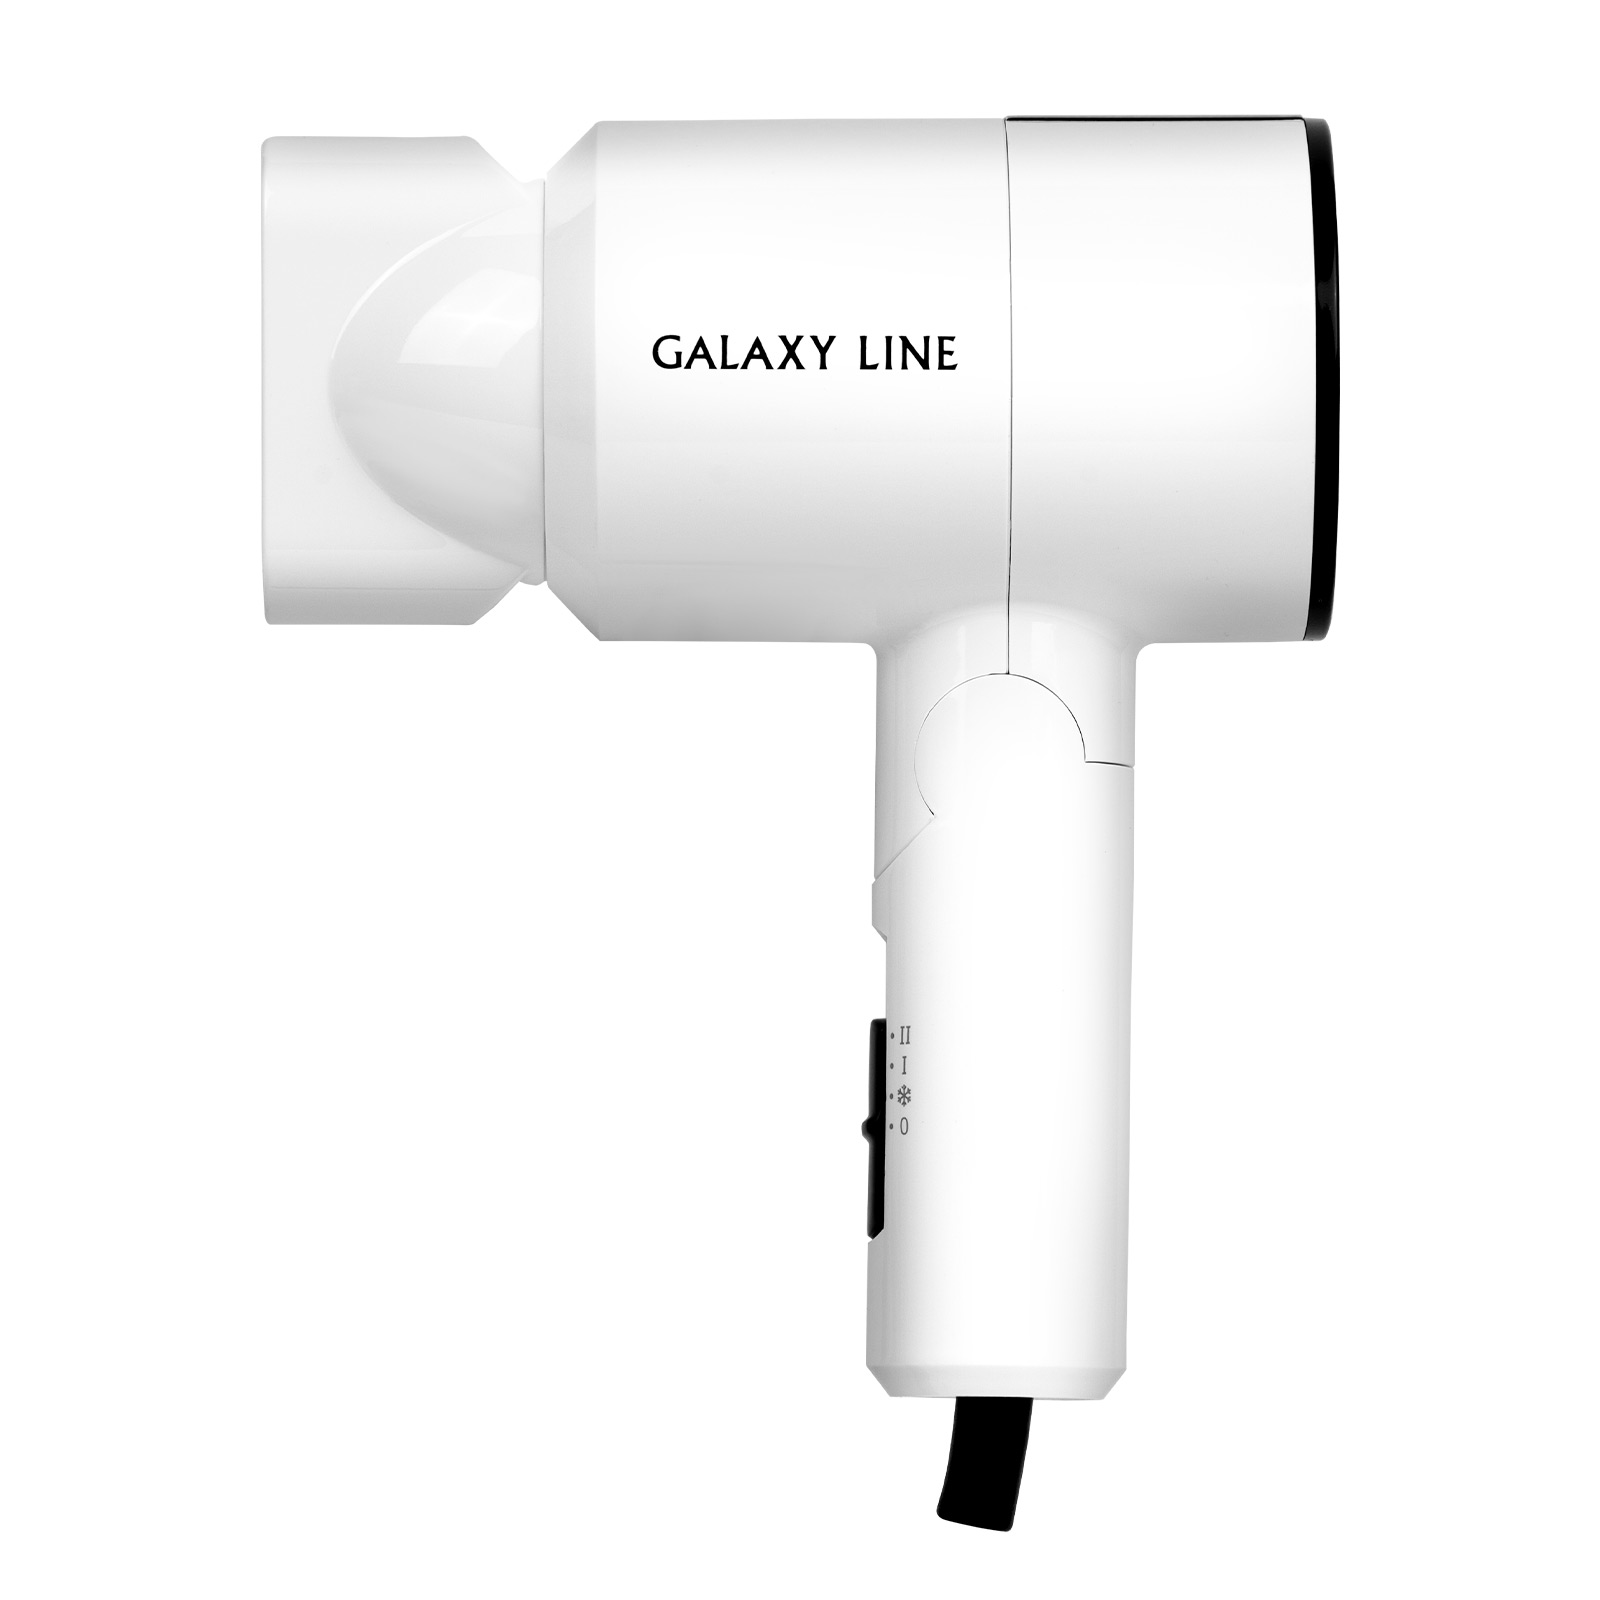 Фен Galaxy LINE GL 4345 1400 Вт, 2 скорости, Холодн воздух, складн ручка (24шт)